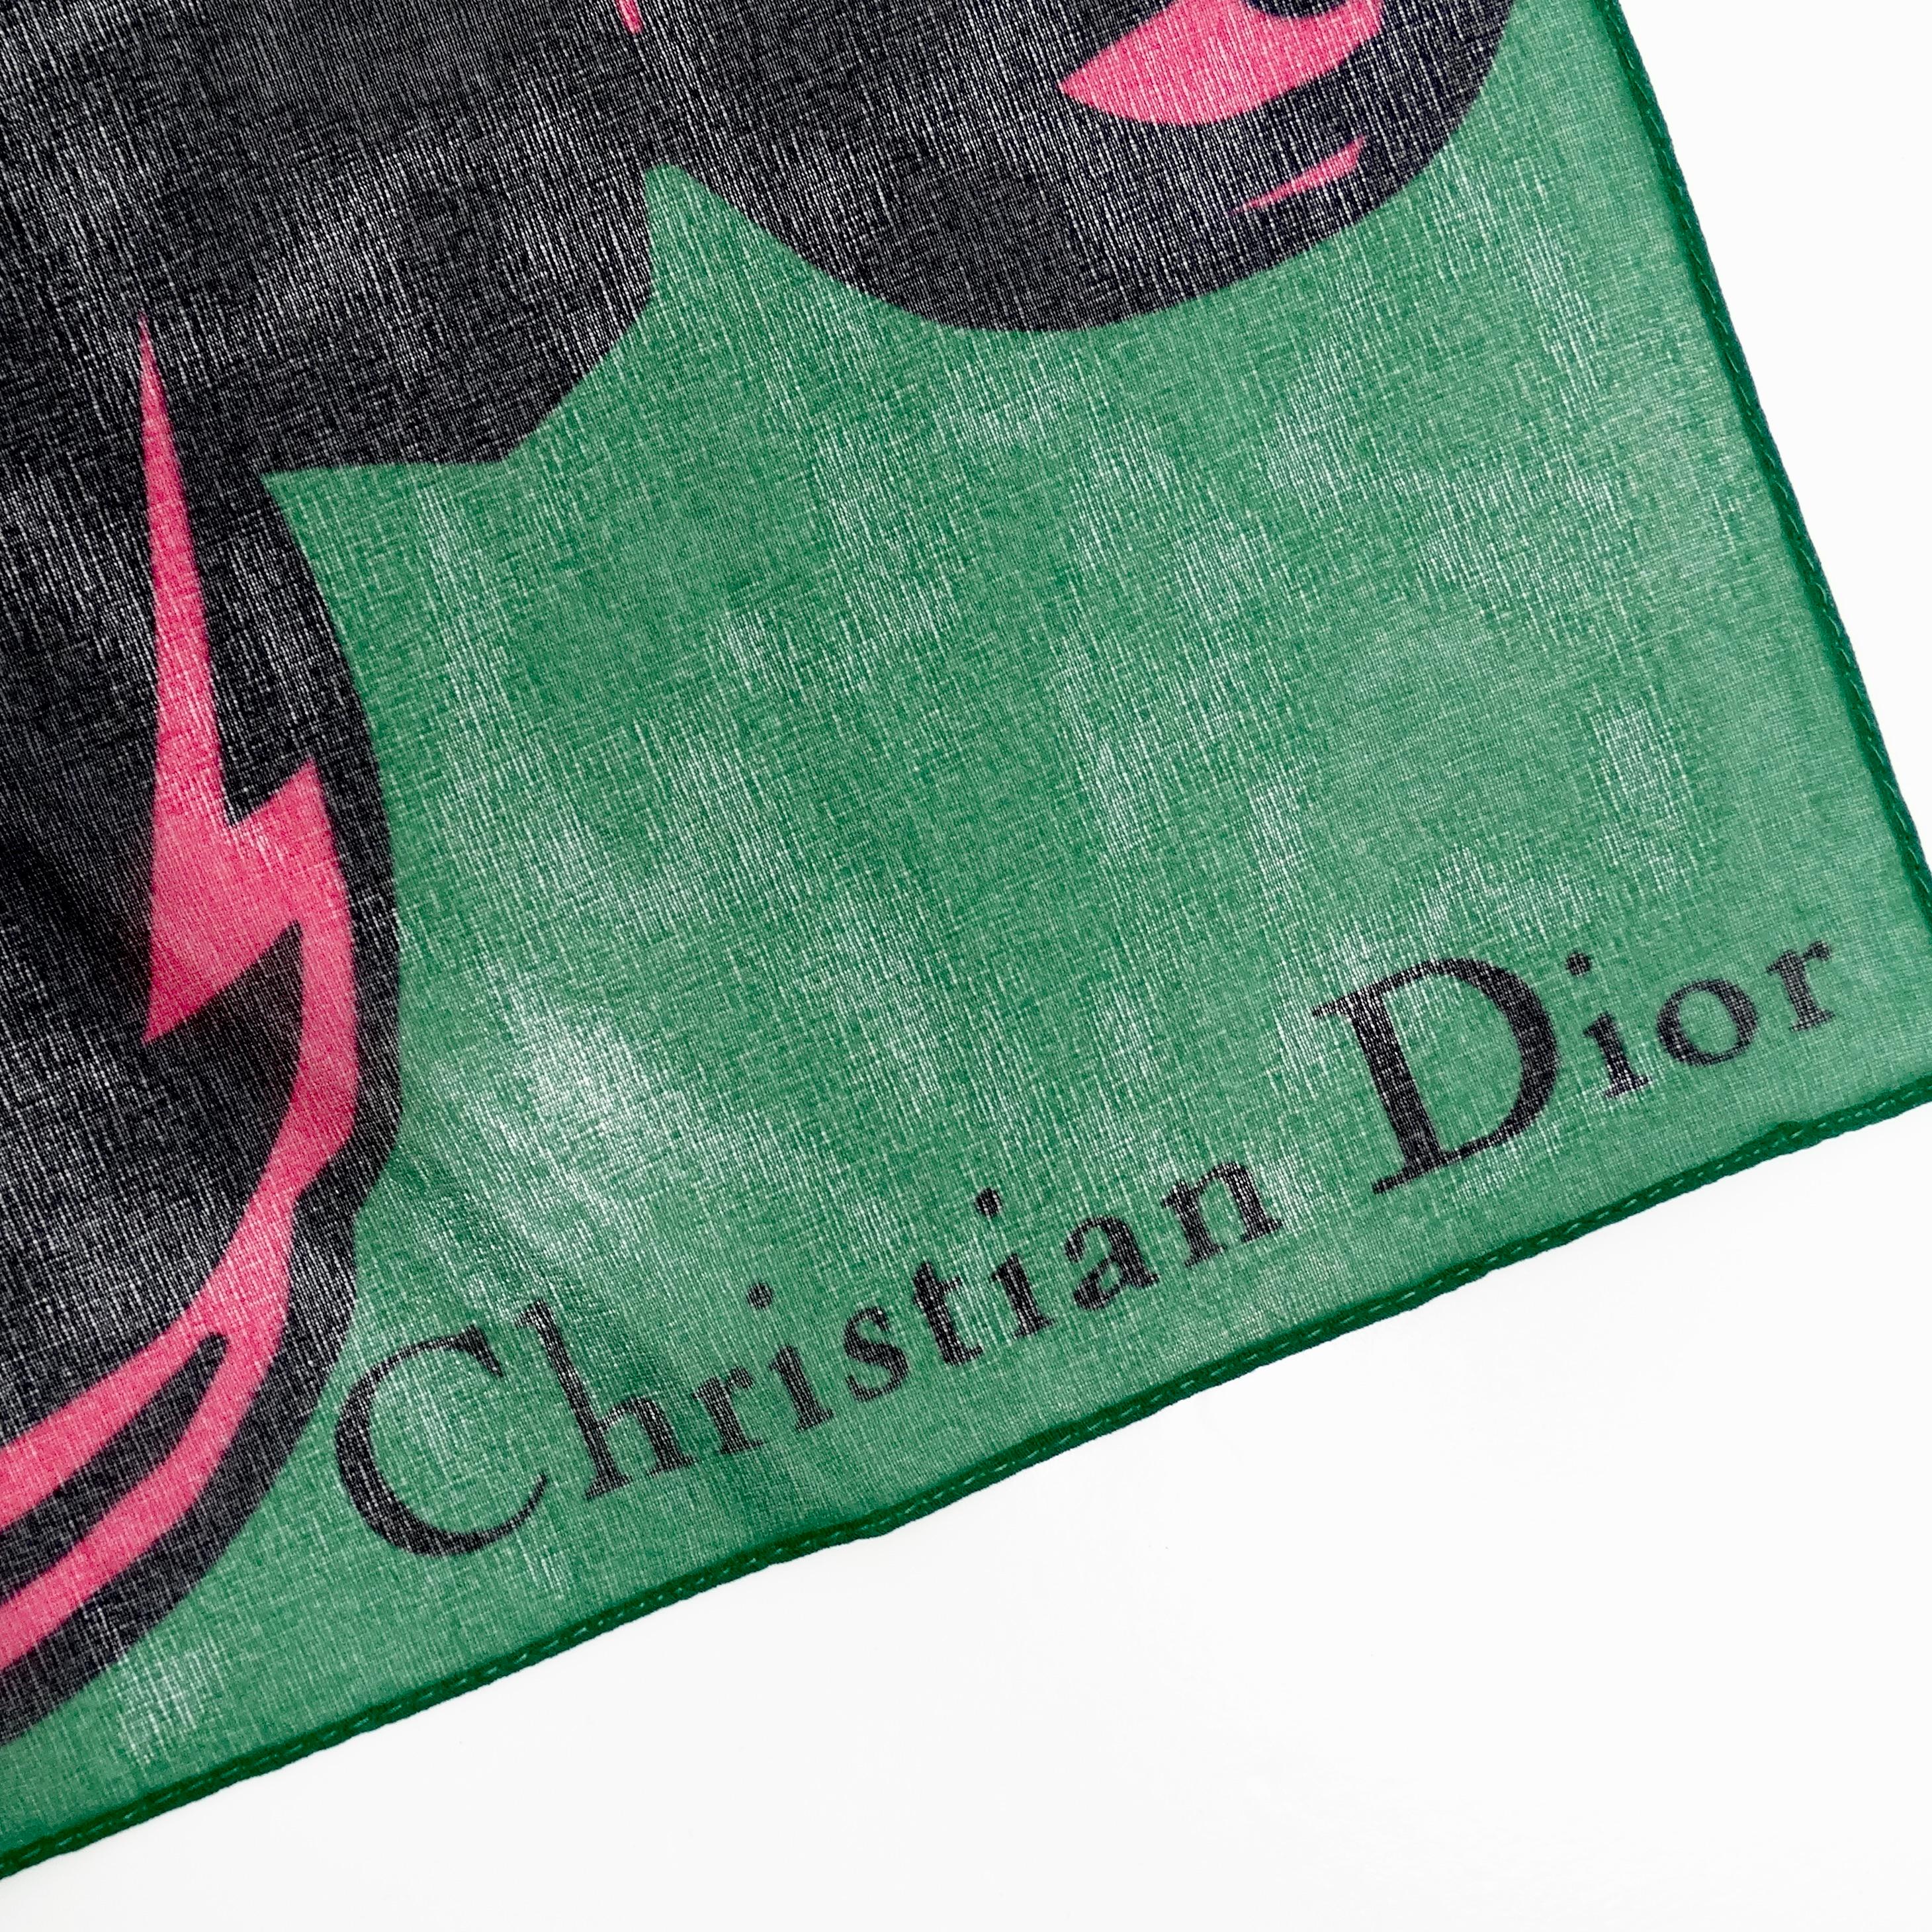 L'écharpe en soie Christian Dior 1990 Poison Petite est un accessoire étonnant qui respire l'élégance et la sophistication. Confectionnée en soie luxueuse, cette petite cravate ou carré de poche est conçue pour rehausser votre look grâce à son